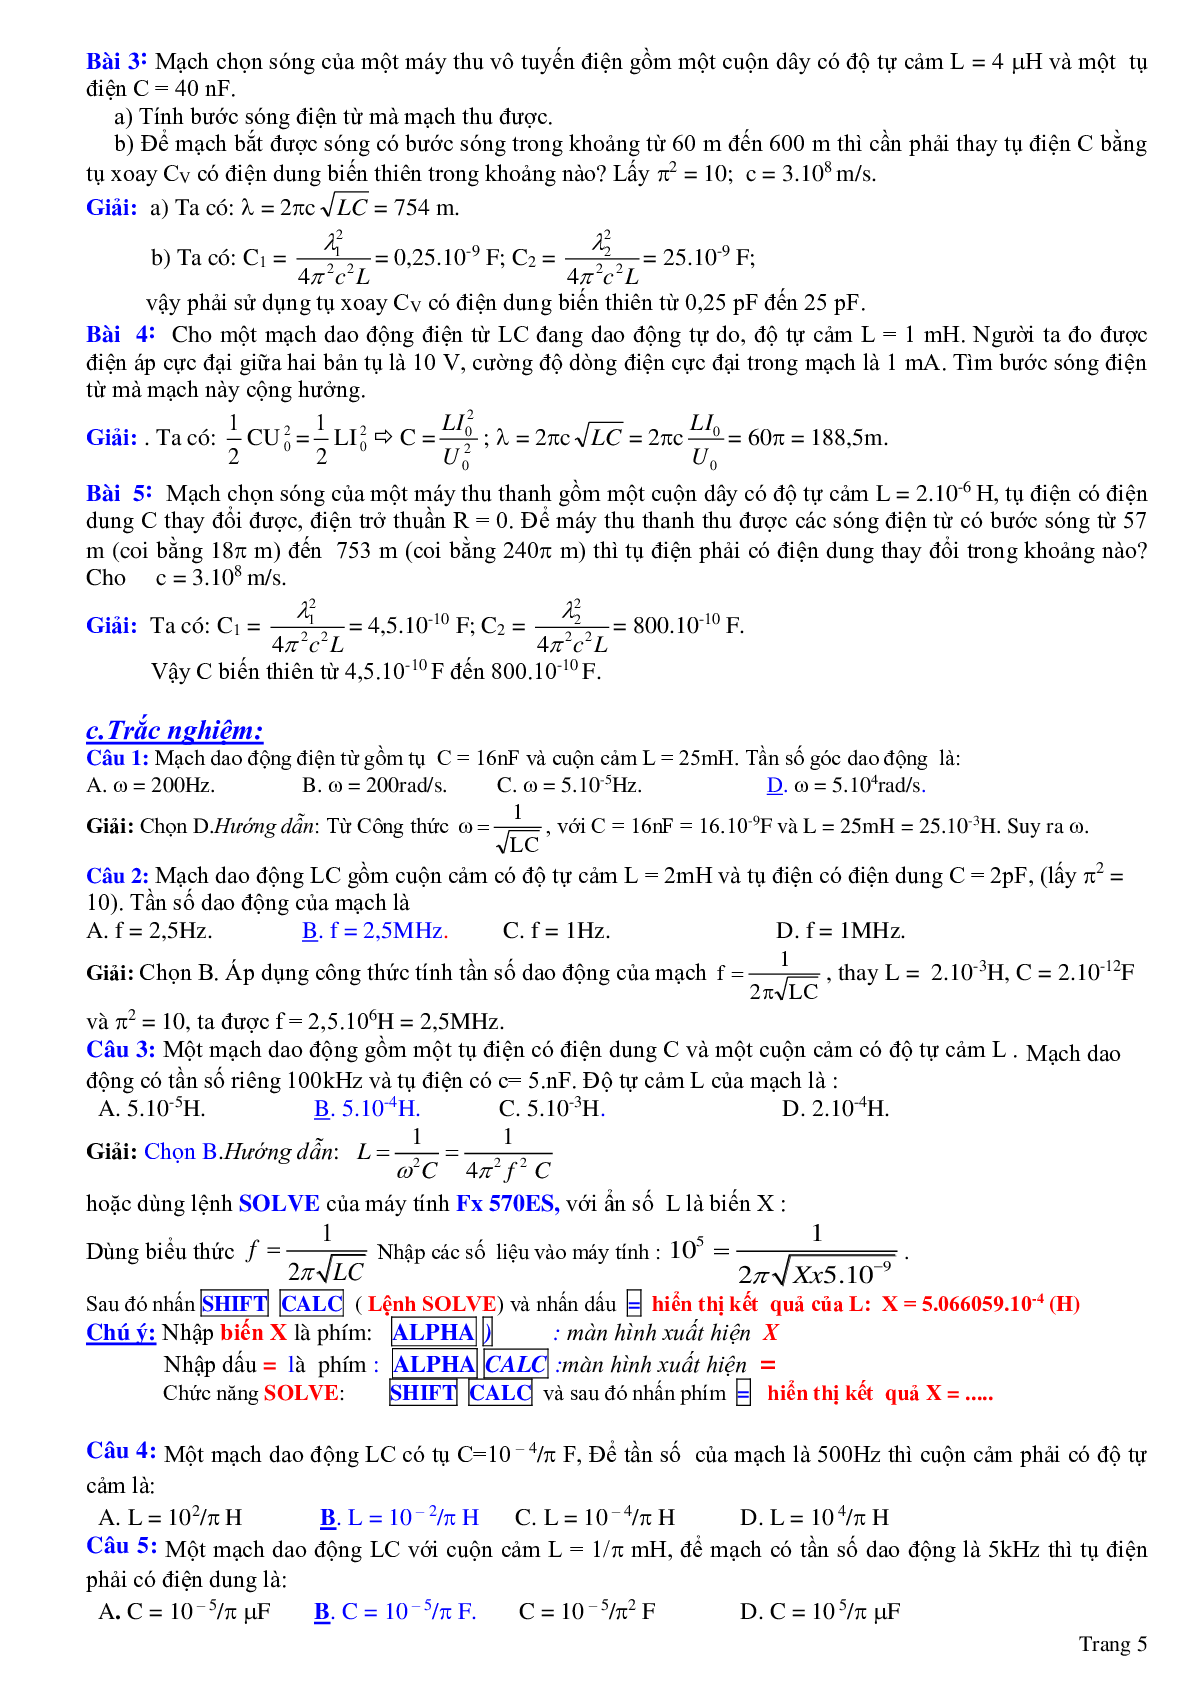 Chuyên đề: Dao động và sóng điện từ môn Vật lý lớp 12 (trang 5)